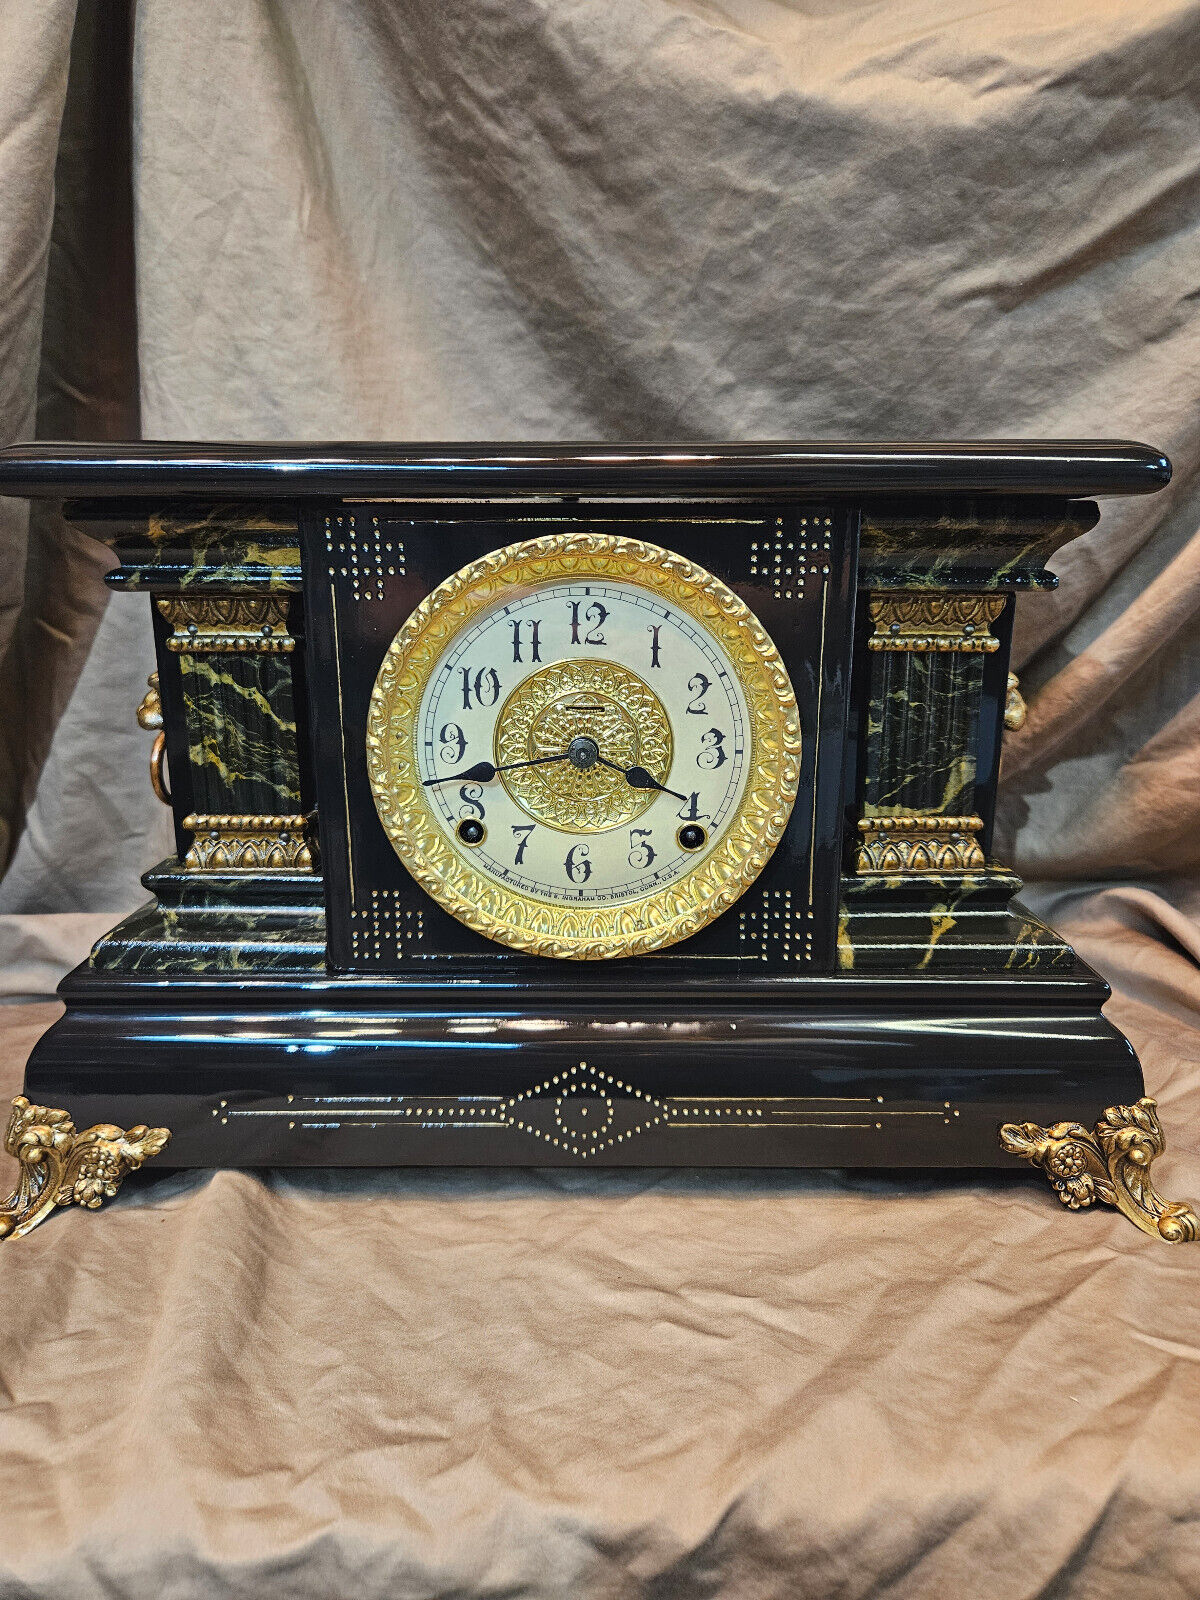 Restored Antique Ingraham Mantel Clock circa 1903 Original Movement